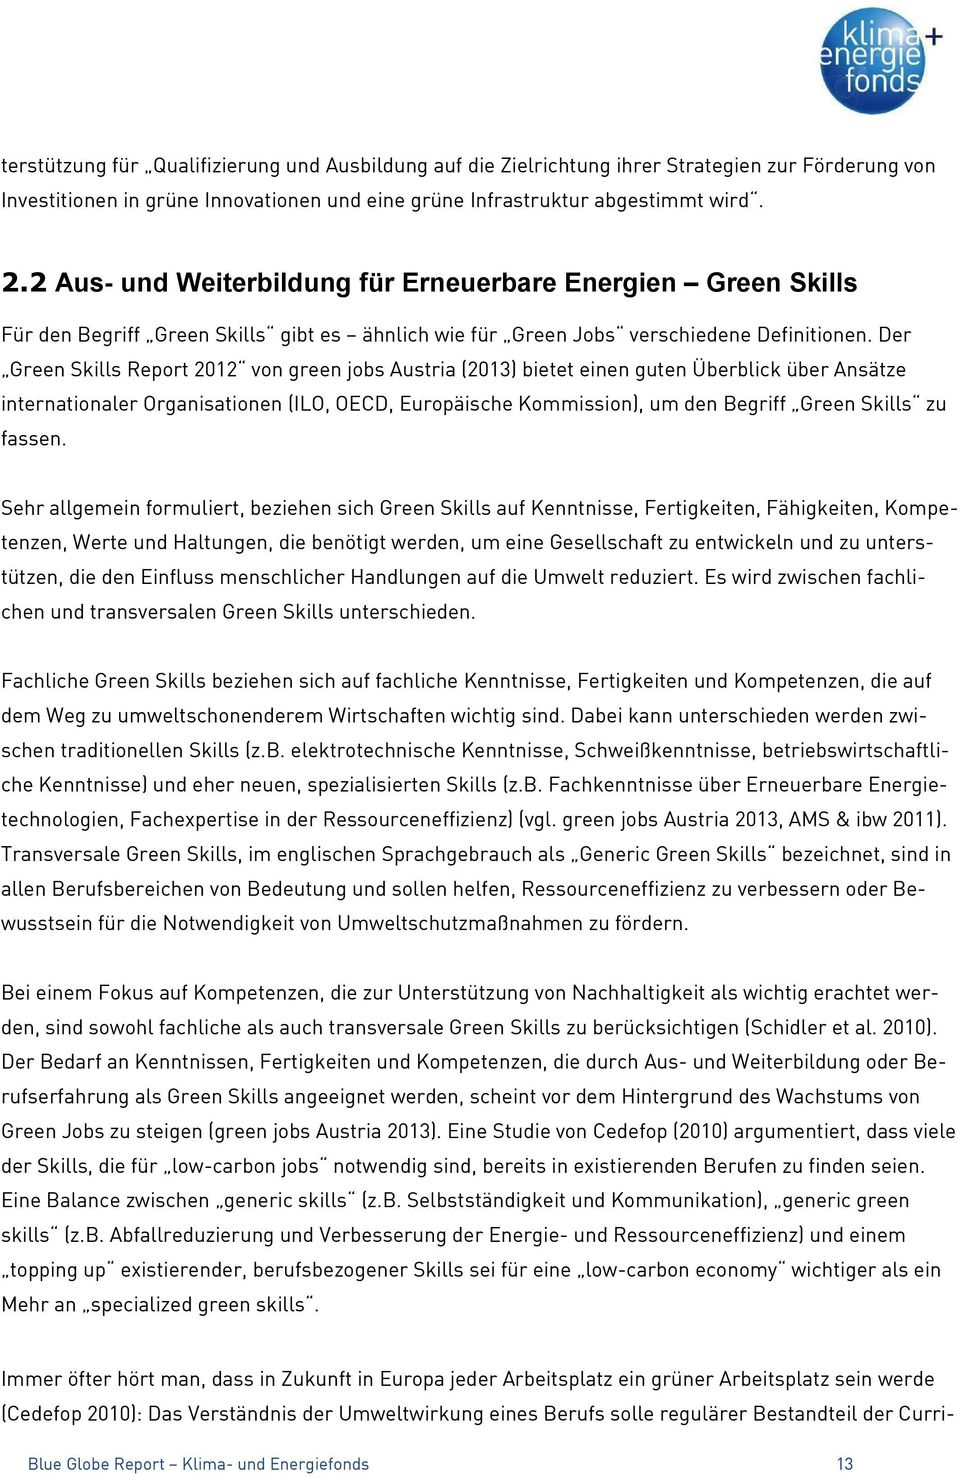 Der Green Skills Report 2012 von green jobs Austria (2013) bietet einen guten Überblick über Ansätze internationaler Organisationen (ILO, OECD, Europäische Kommission), um den Begriff Green Skills zu